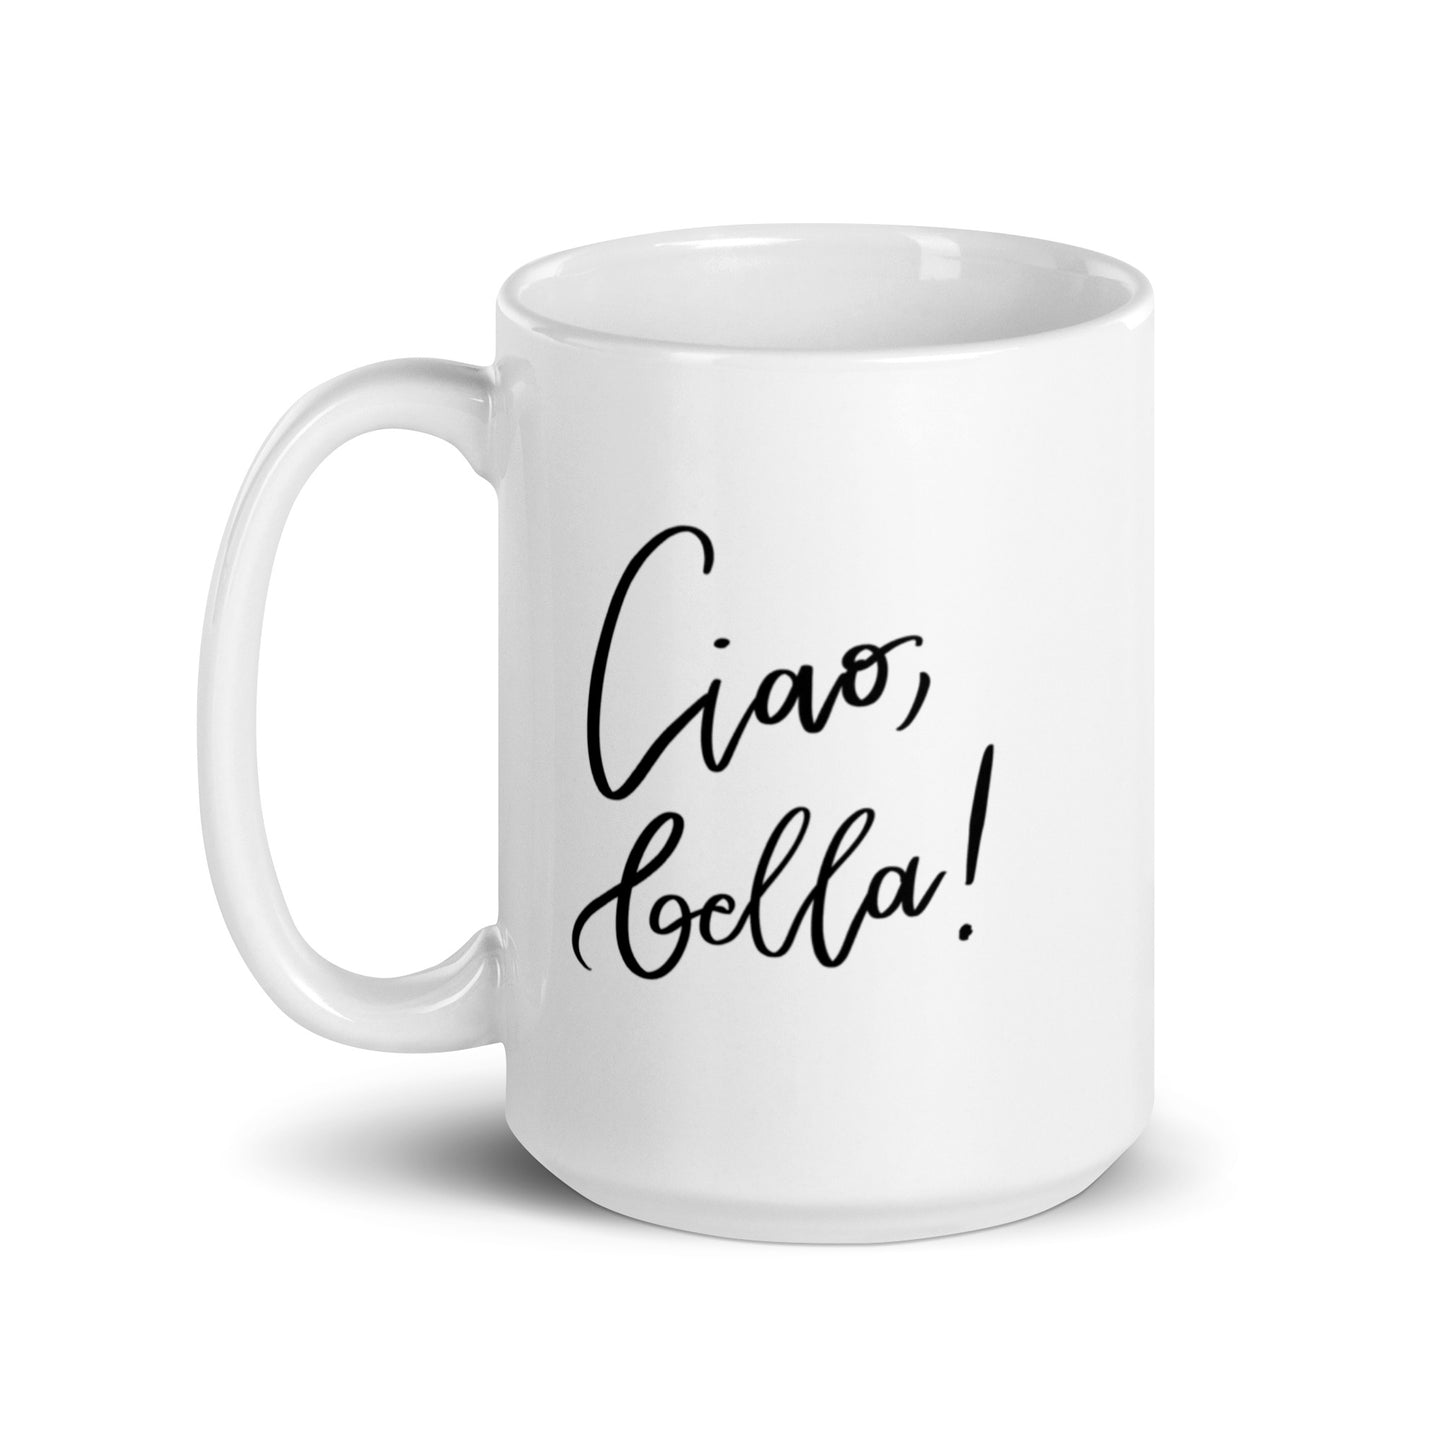 Ceramic mug "Ciao, bella!"